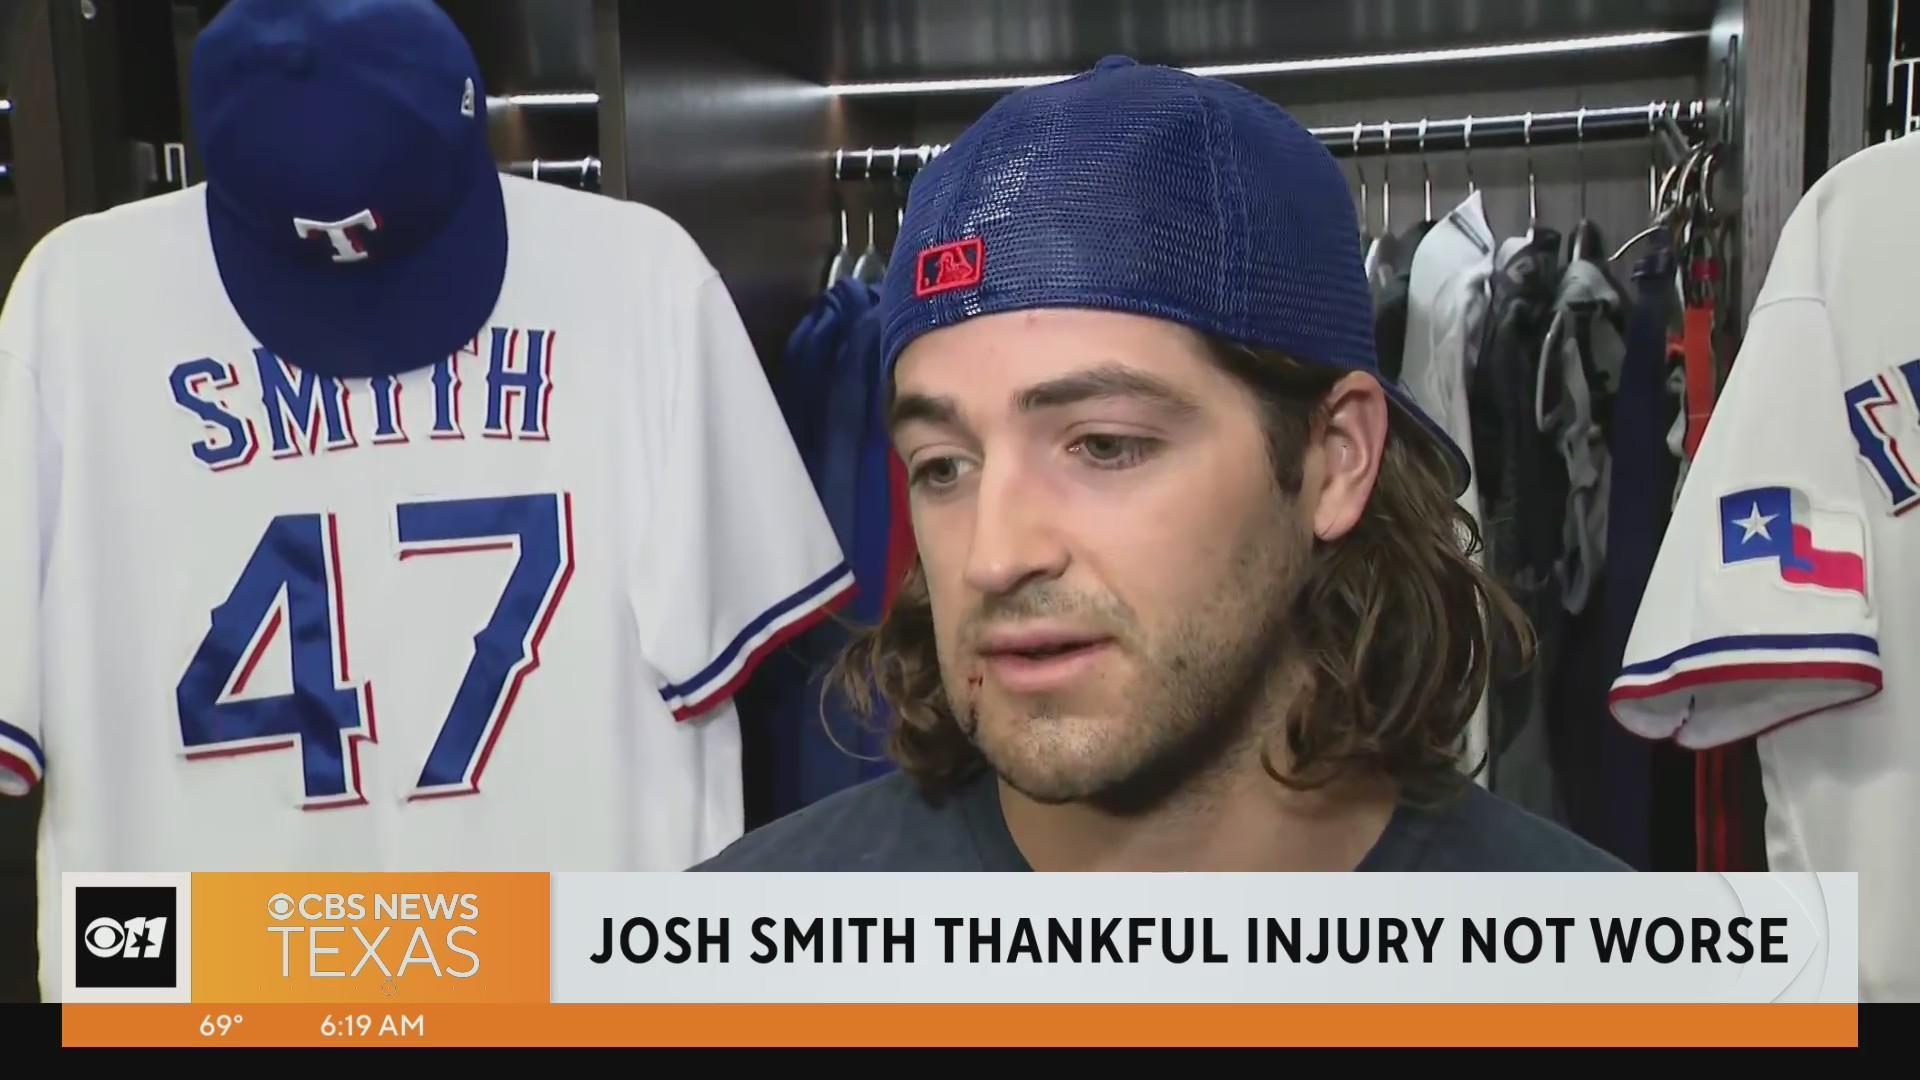 Texas Ranger Josh Smith thankful injury not worse - CBS Texas